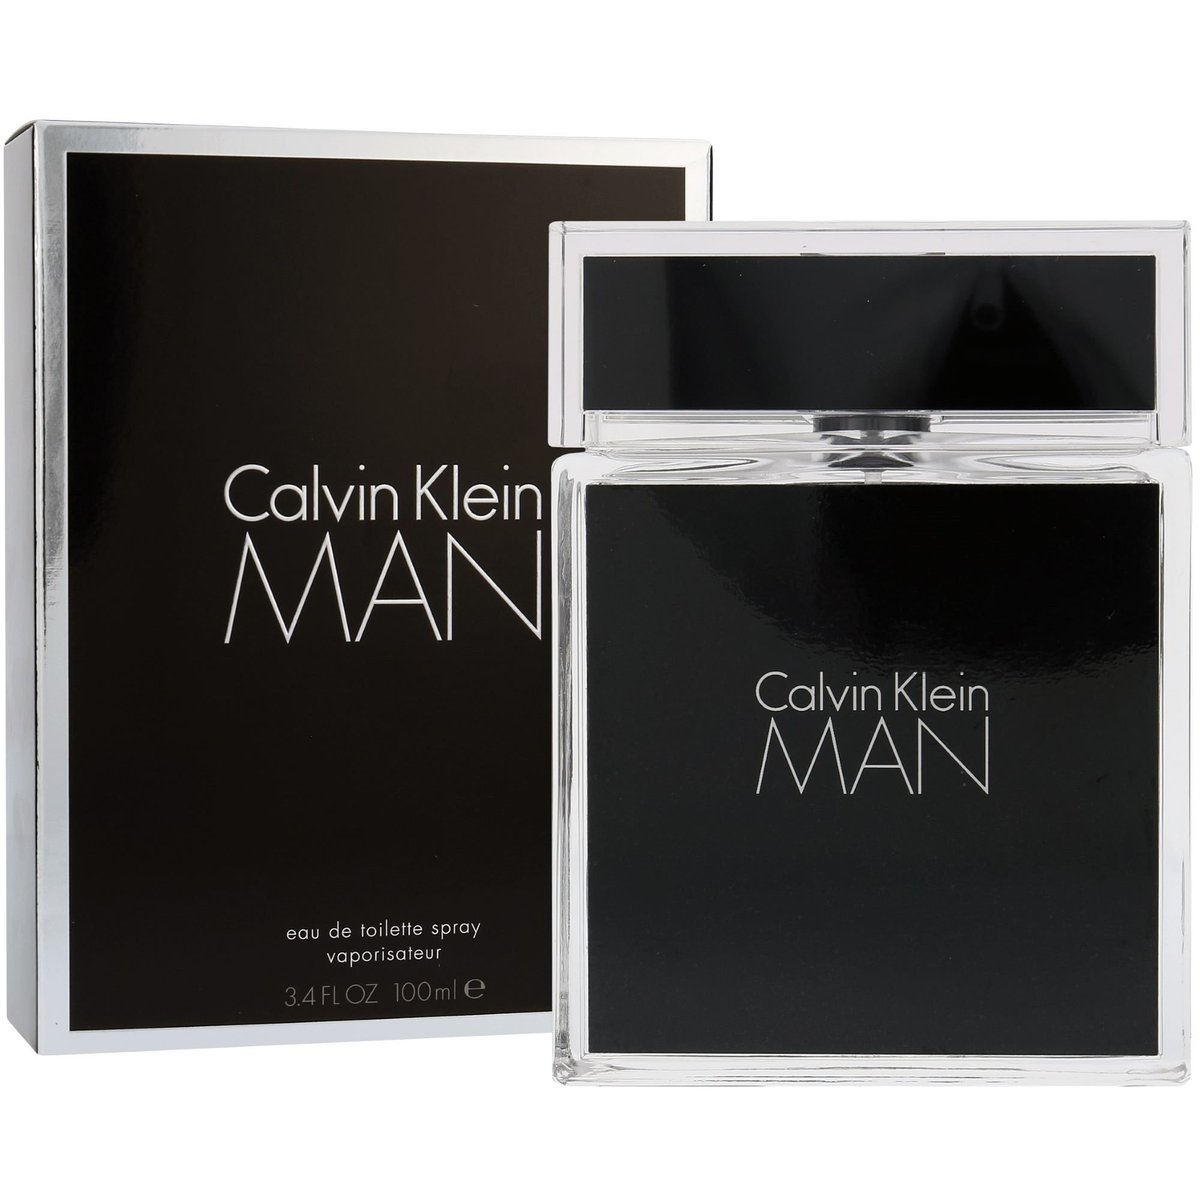 Calvin Klein Man toaletní voda